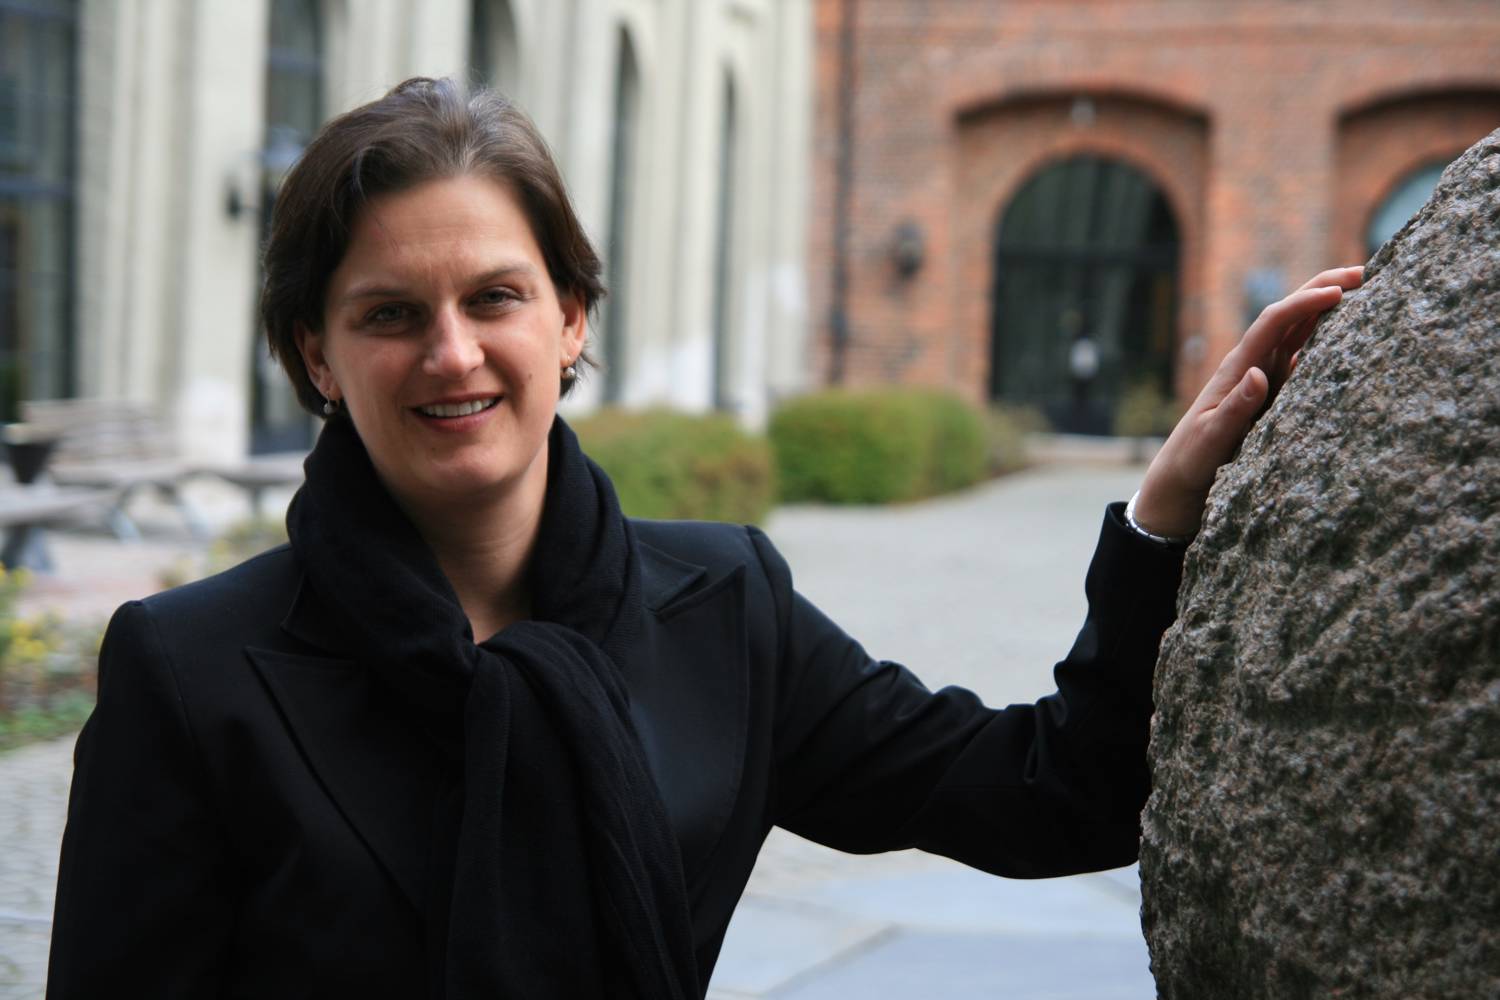 Inger Skjelsbæk, Deputy Director at PRIO 2009-2015. Photo: Jørgen Carling / PRIO